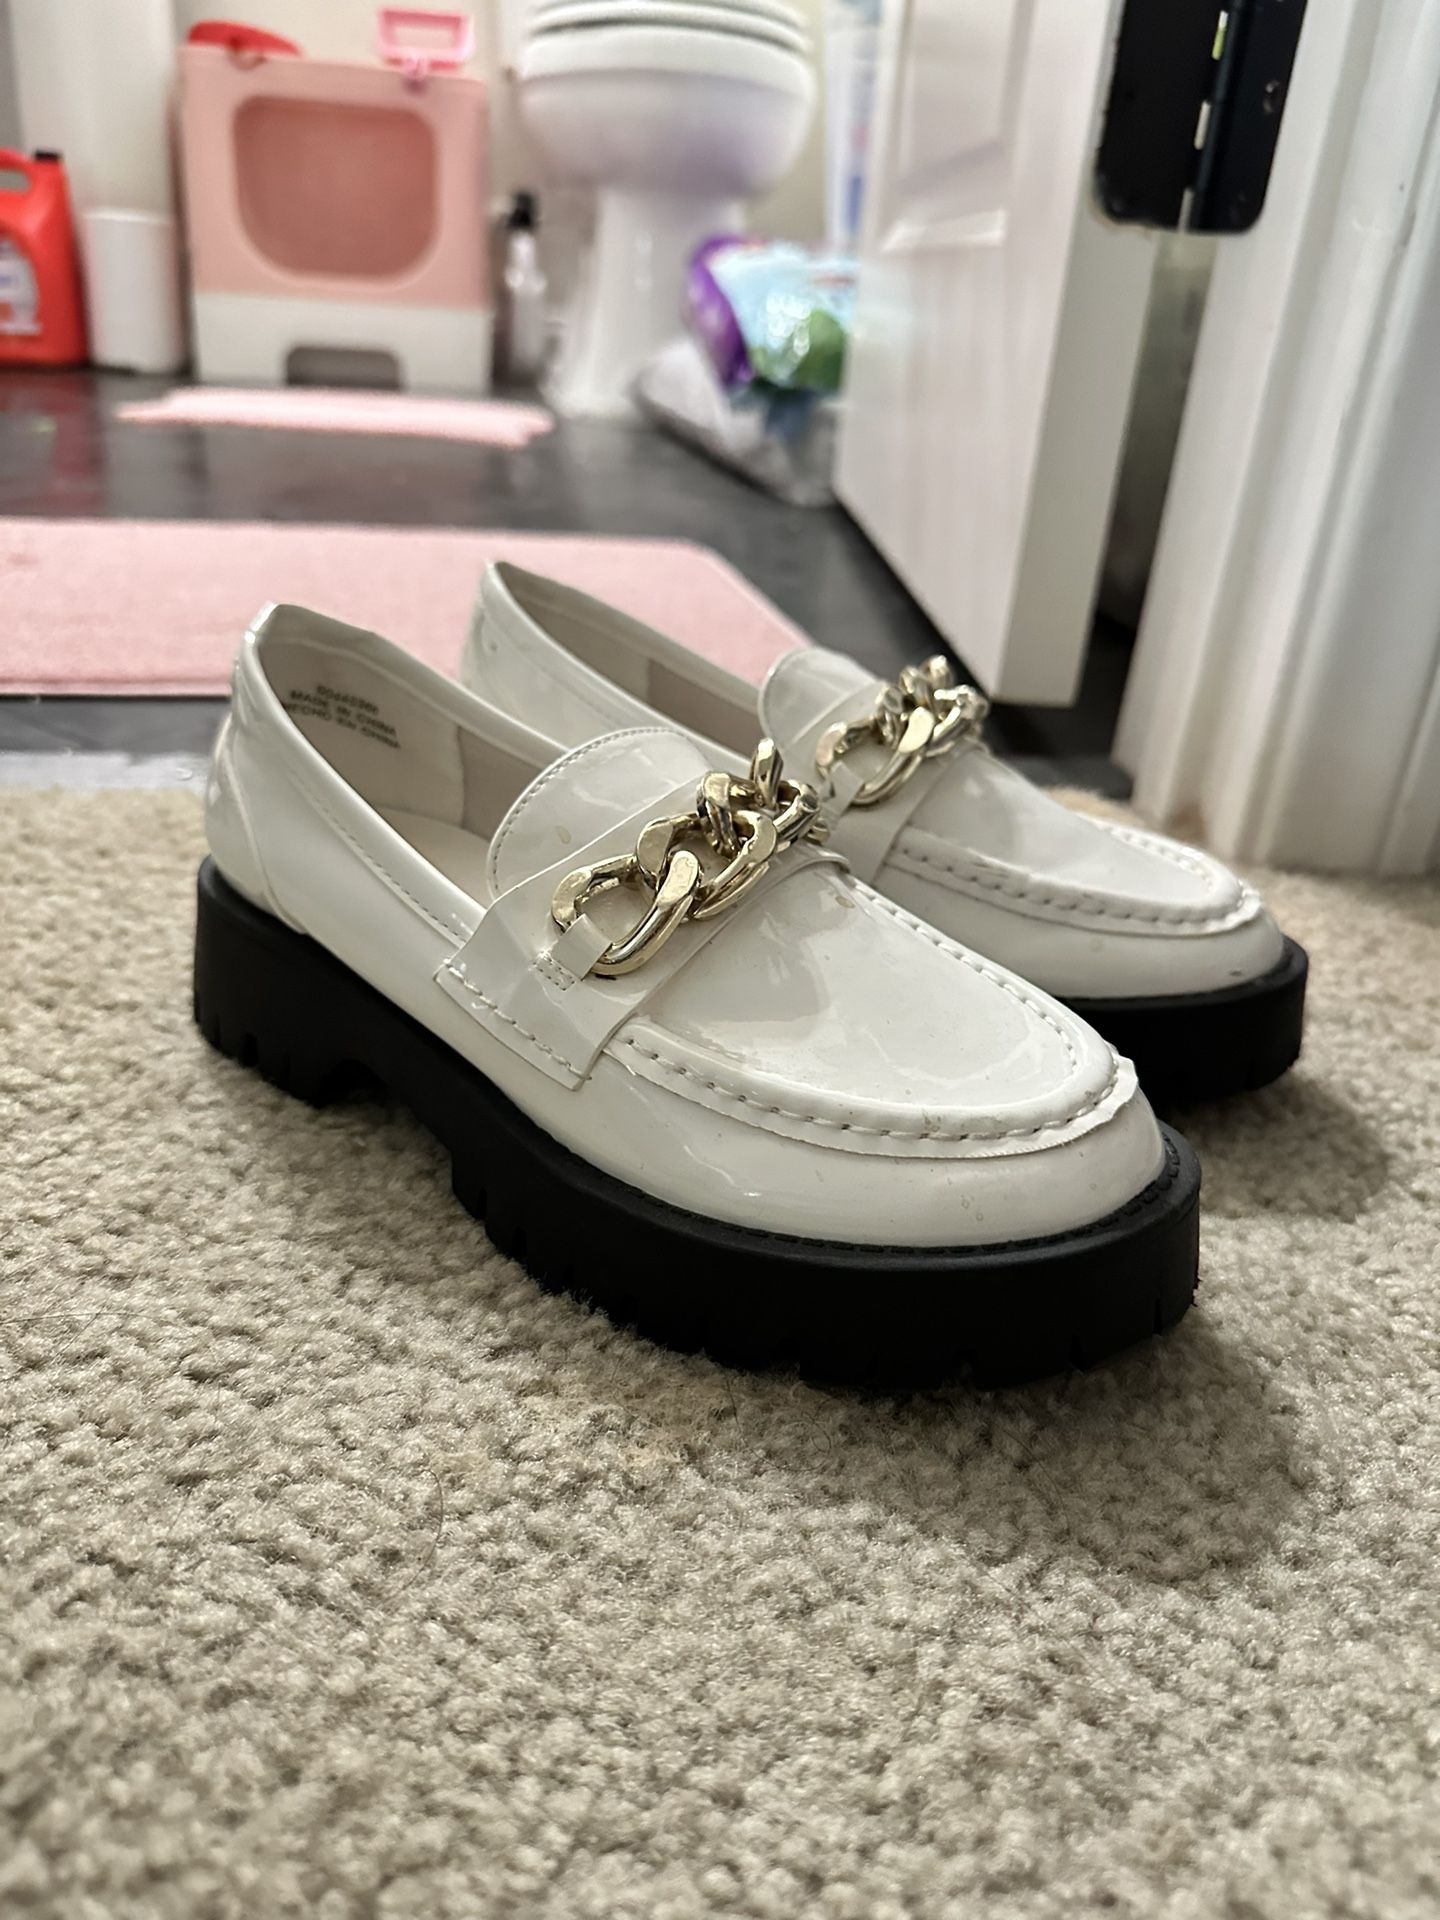 size 7 platform cute white shoes 